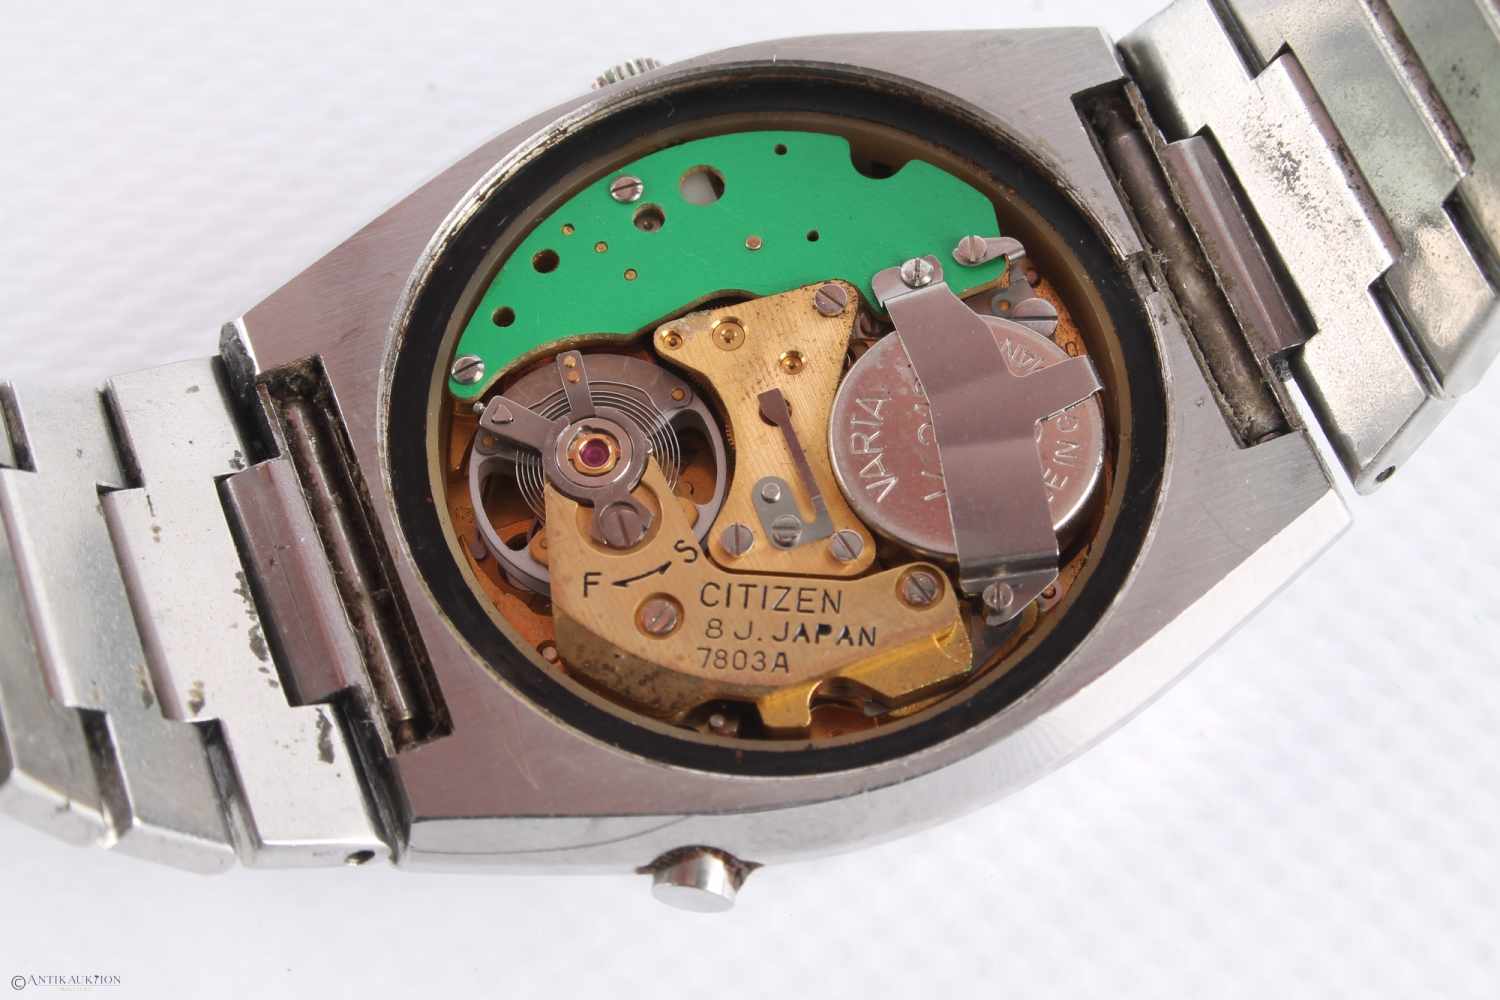 CITIZEN Cosmotron Electronic 7803 Armbanduhr, HAU, Edelstahlgehäuse, Ref-Nr. 31230890, Kaliber 7803, - Image 5 of 5